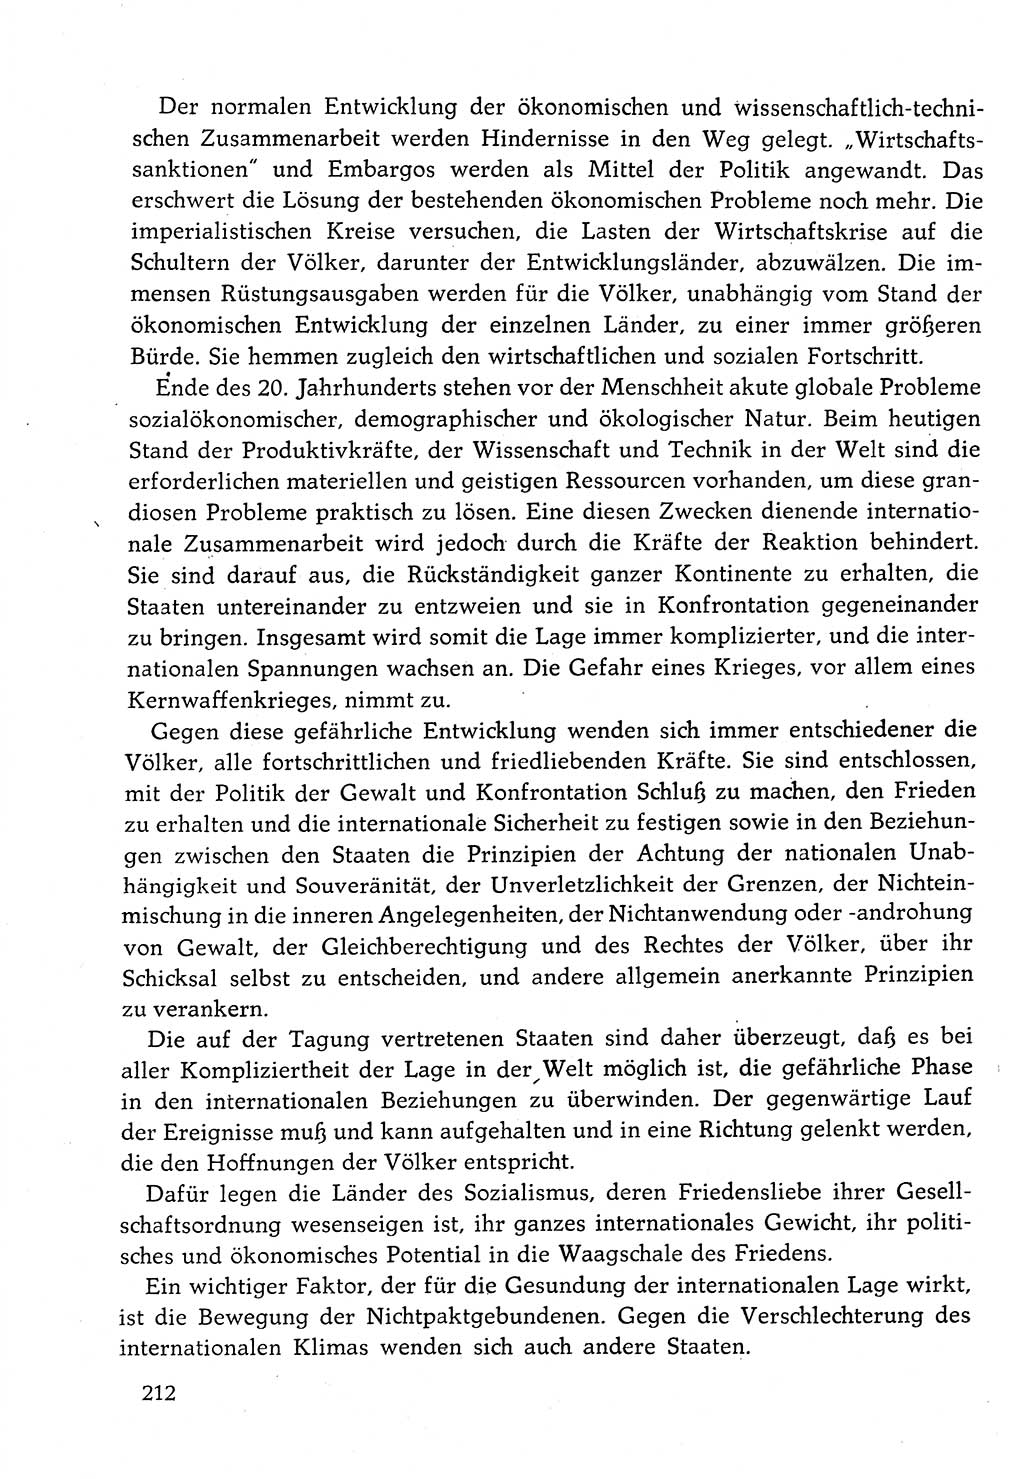 Dokumente der Sozialistischen Einheitspartei Deutschlands (SED) [Deutsche Demokratische Republik (DDR)] 1982-1983, Seite 212 (Dok. SED DDR 1982-1983, S. 212)